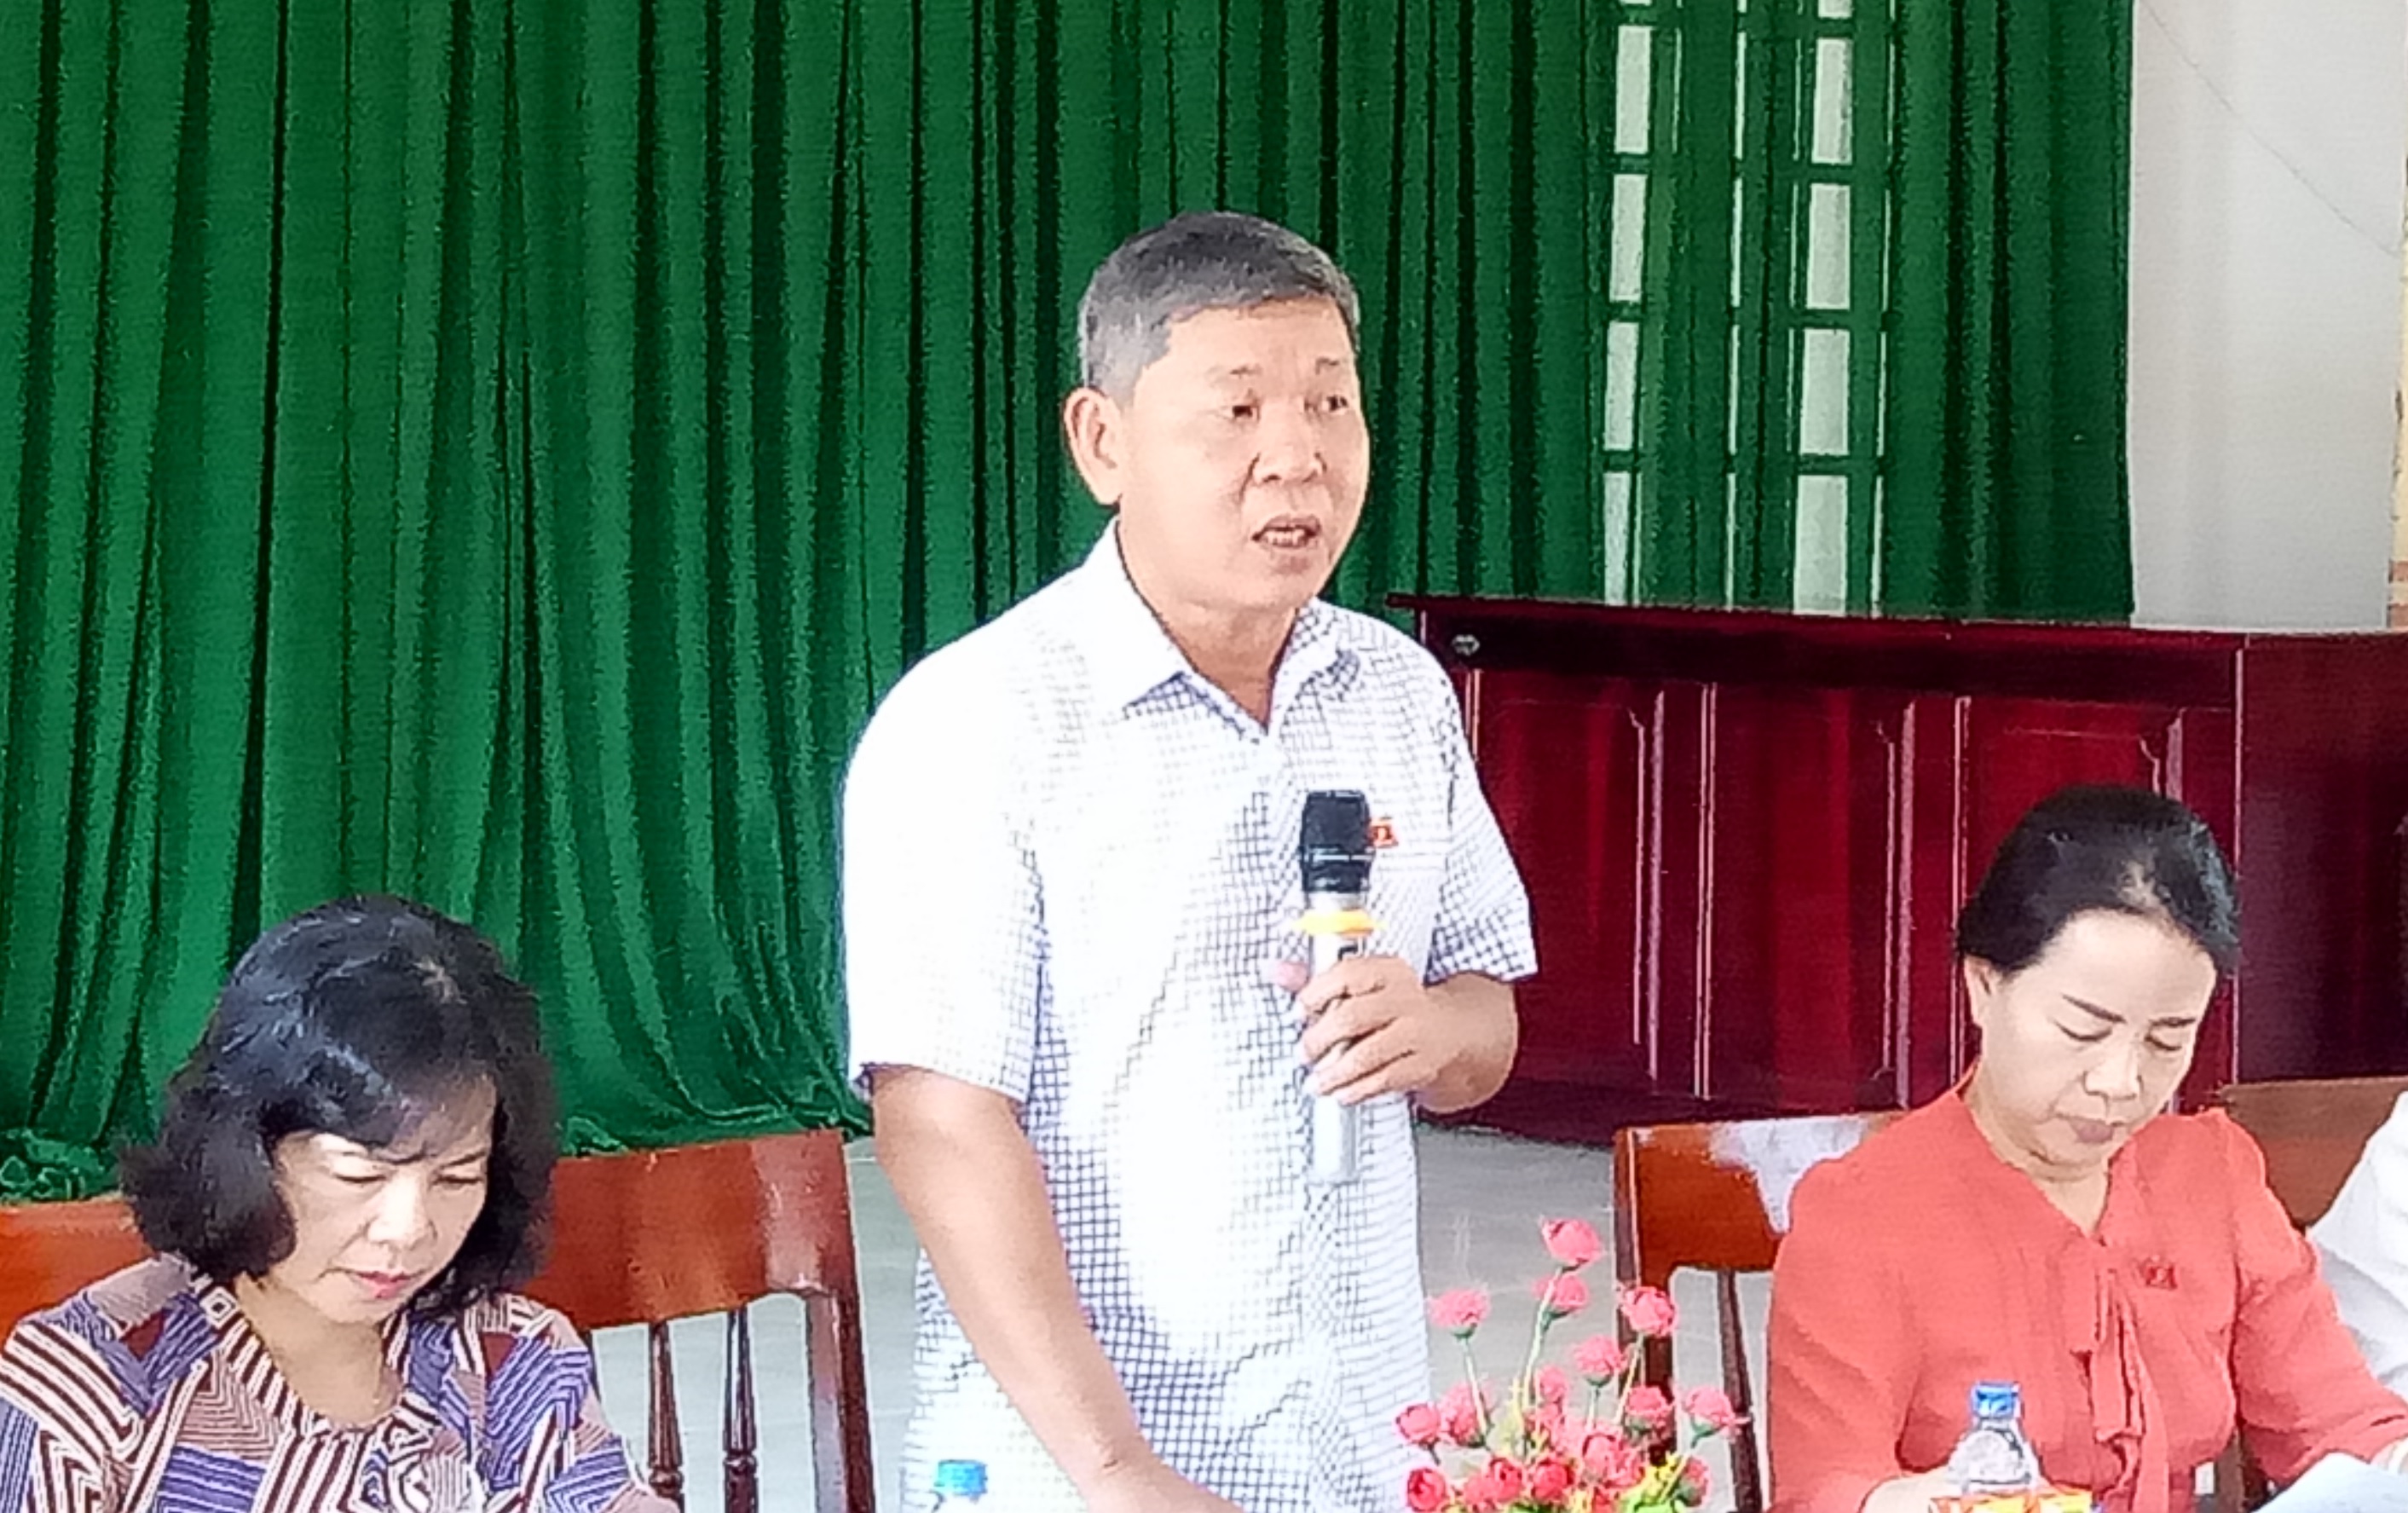 Ủy ban về các vấn đề xã hội của Quốc hội giám sát về kết quả thực hiện Nghị quyết số 76/2014/QH13 về đẩy mạnh thực hiện mục tiêu giảm nghèo bền vững đến năm 2020 trên địa bàn huyện Minh Long